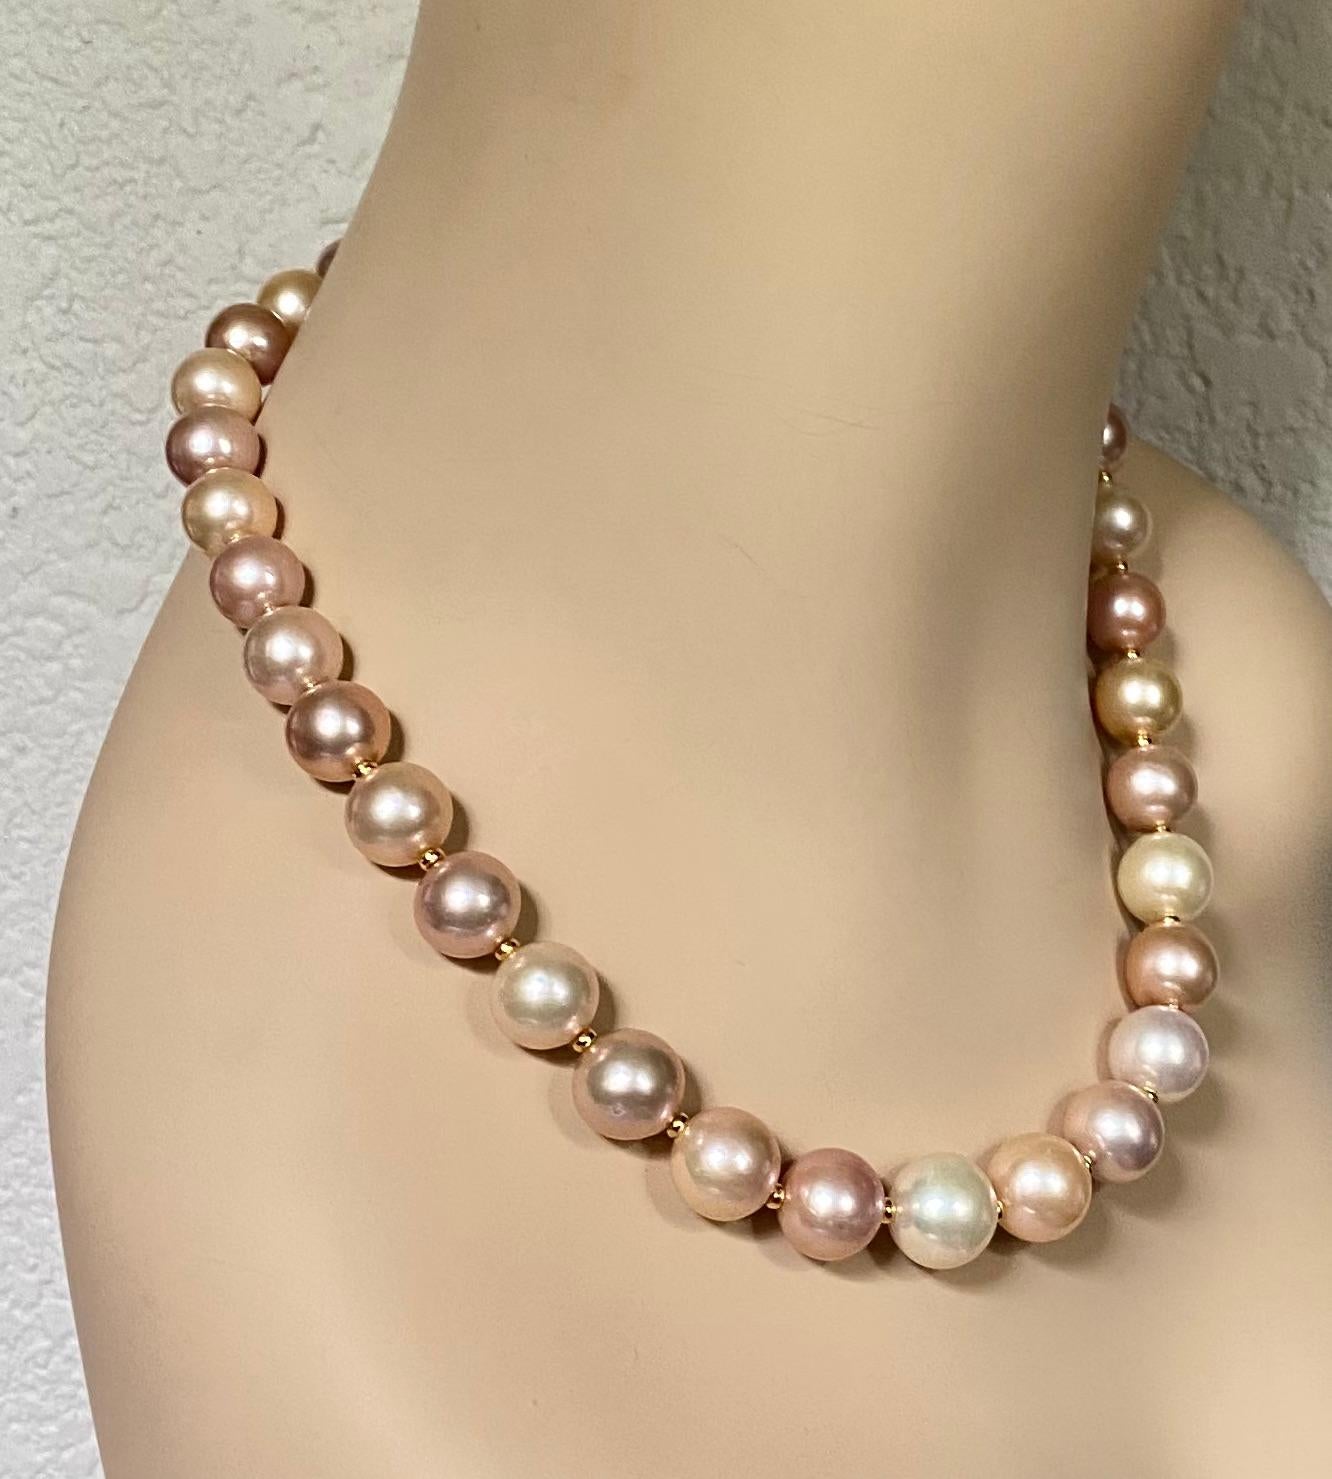 Süßwasserperlen in Edelsteinqualität werden in dieser eleganten Halskette zur Schau gestellt.  Zweiunddreißig Perlen sind in der Größe abgestuft, von der größten mit 14 mm bis zur kleinsten mit 12 mm.  Sie besitzen einen reichen Glanz und sind frei